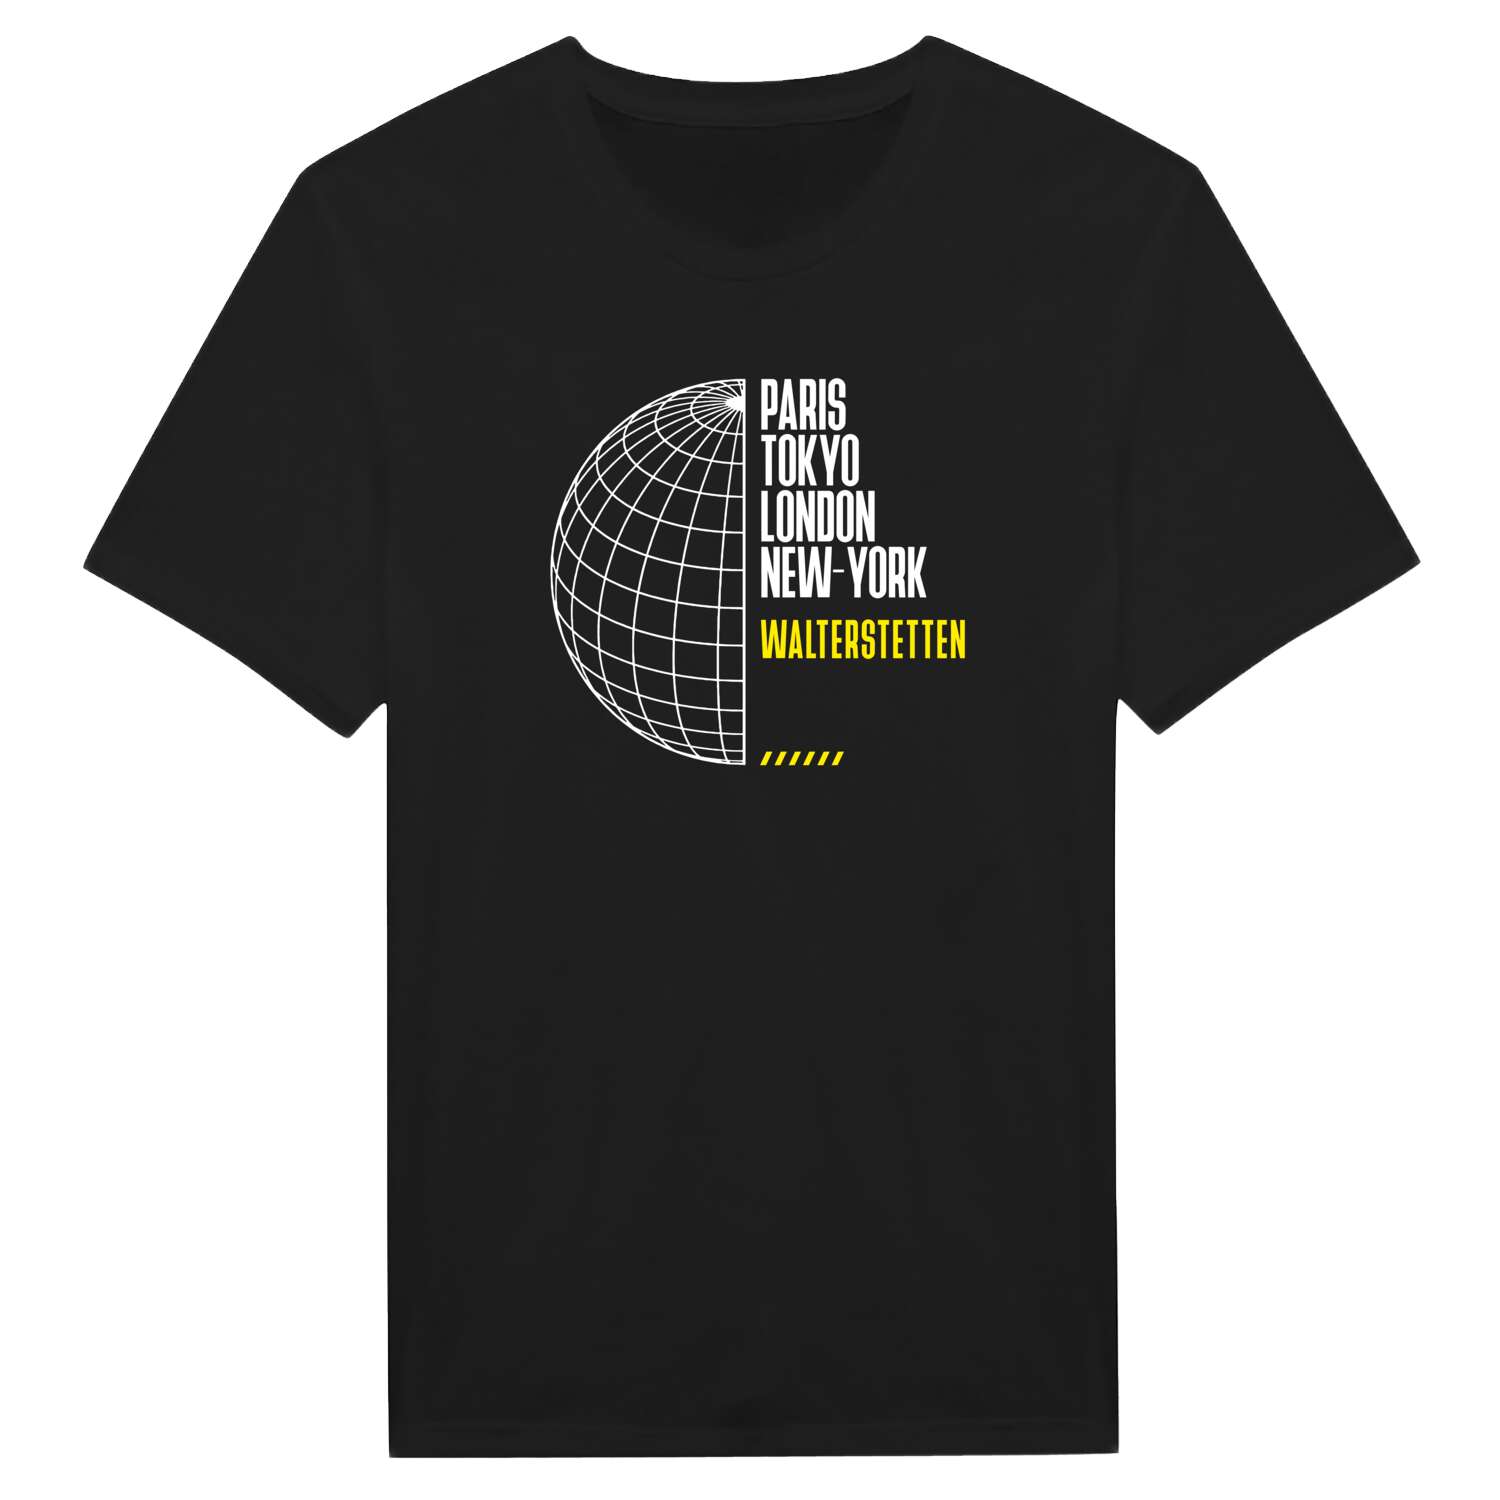 Walterstetten T-Shirt »Paris Tokyo London«